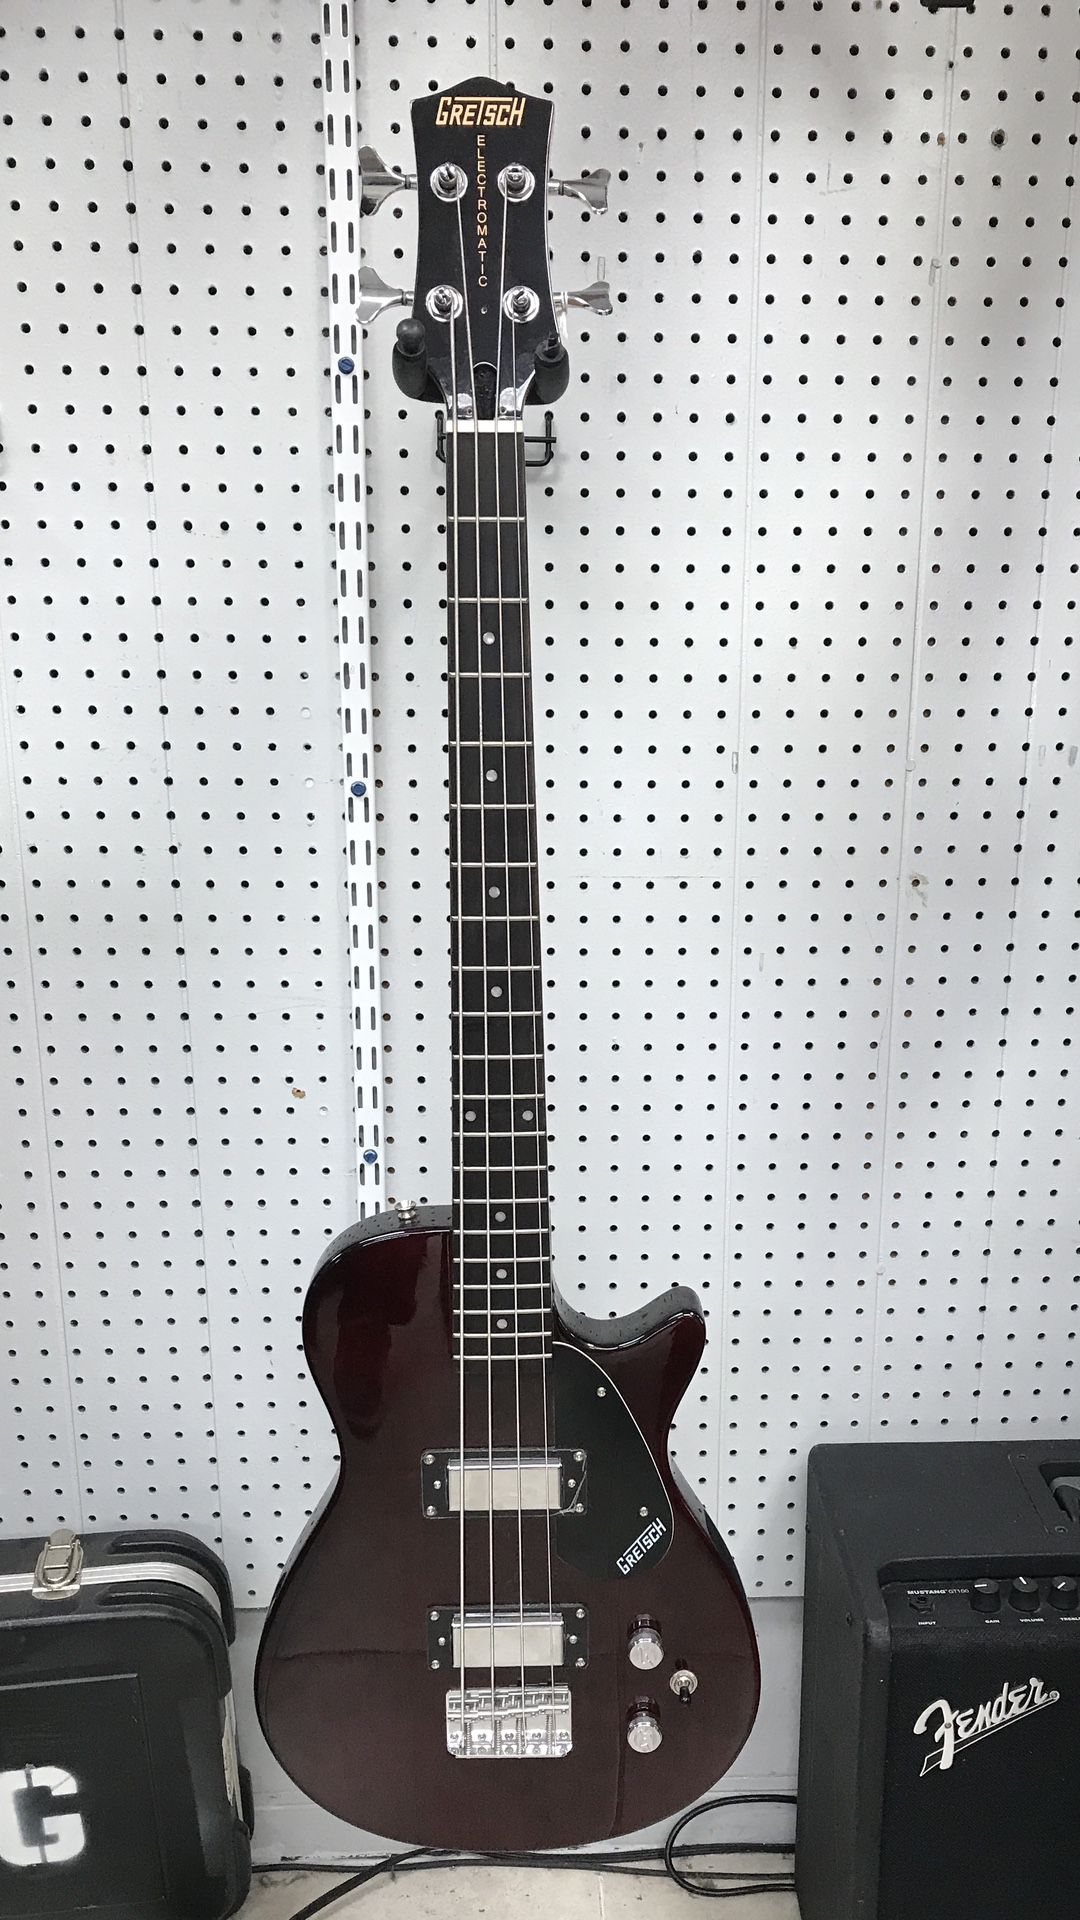 Gretsch G220 4 string Bass Guitar